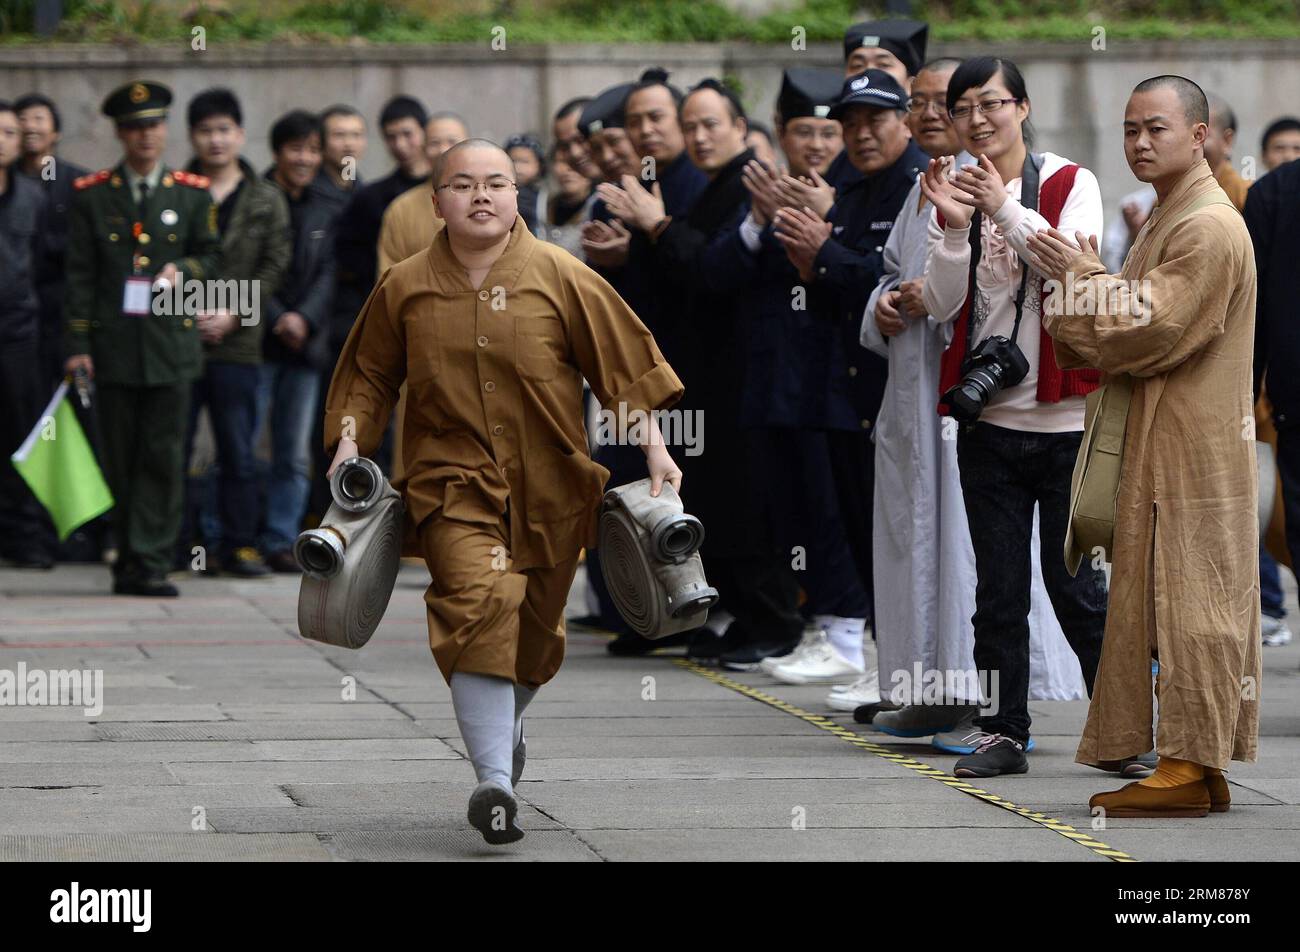 Un monaco partecipa a una footrace con peso durante i giochi di fuoco che si tengono a Hangzhou, capitale della provincia di Zhejiang della Cina orientale, il 1 aprile 2014. Martedì si è tenuto qui un gioco del fuoco del circolo religioso di Hangzhou, in cui 60 persone del circolo buddista e taoista hanno gareggiato in eventi antincendio. (Xinhua/Han Chuanhao) (zgp) CHINA-HANGZHOU-FIRE GAMES (CN) PUBLICATIONxNOTxINxCHN a Monk partecipa a Footrace with Weight durante i Fire Games Hero a Hangzhou capitale della provincia dello Zhejiang della Cina orientale 1 aprile 2014 a Fire Games of Hangzhou'S Religious Circle What Hero here ON Tuesday in W. Foto Stock